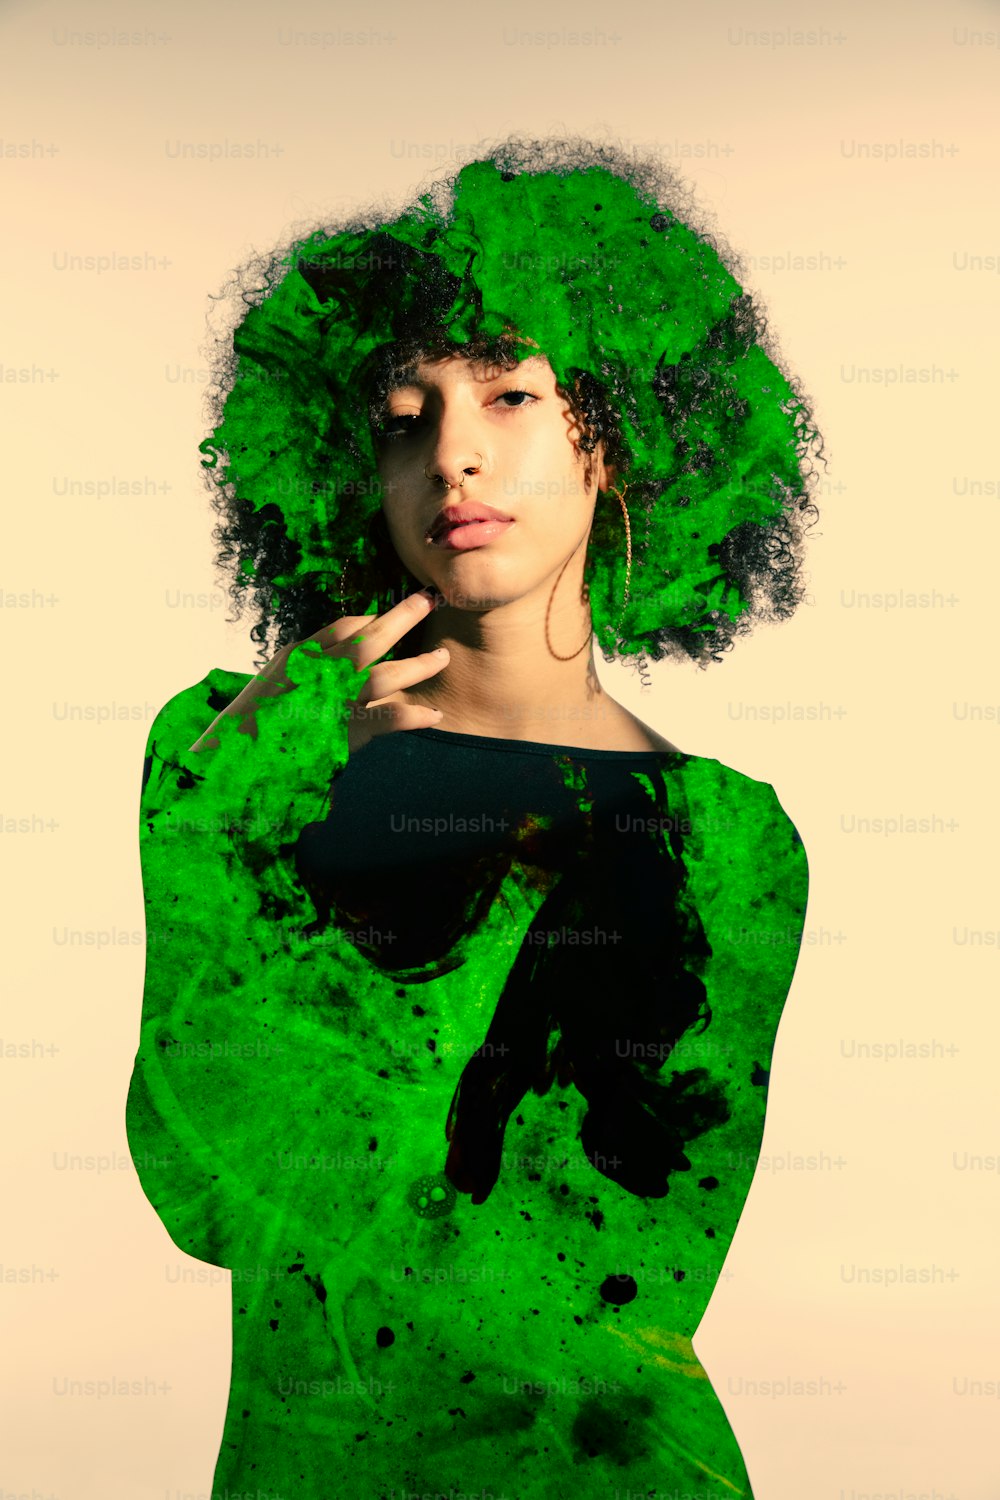 초록색 머리를 한 여성이 사진을 찍기 위해 포즈를 취하고 있다